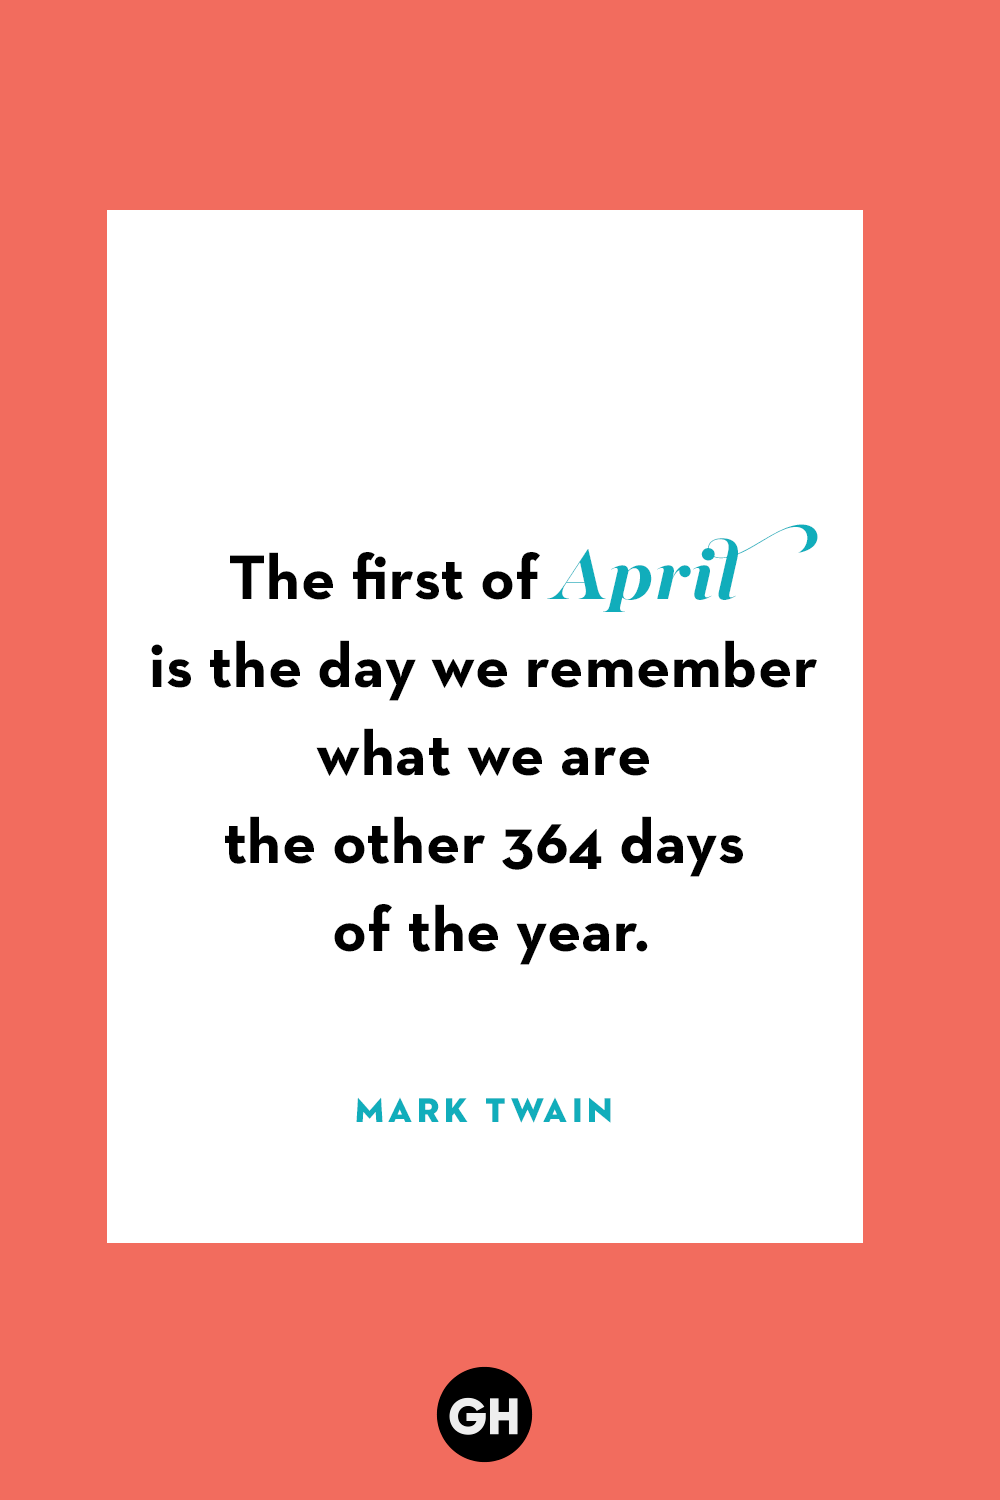 April Fools Quotes Mark Twain 1644447474 